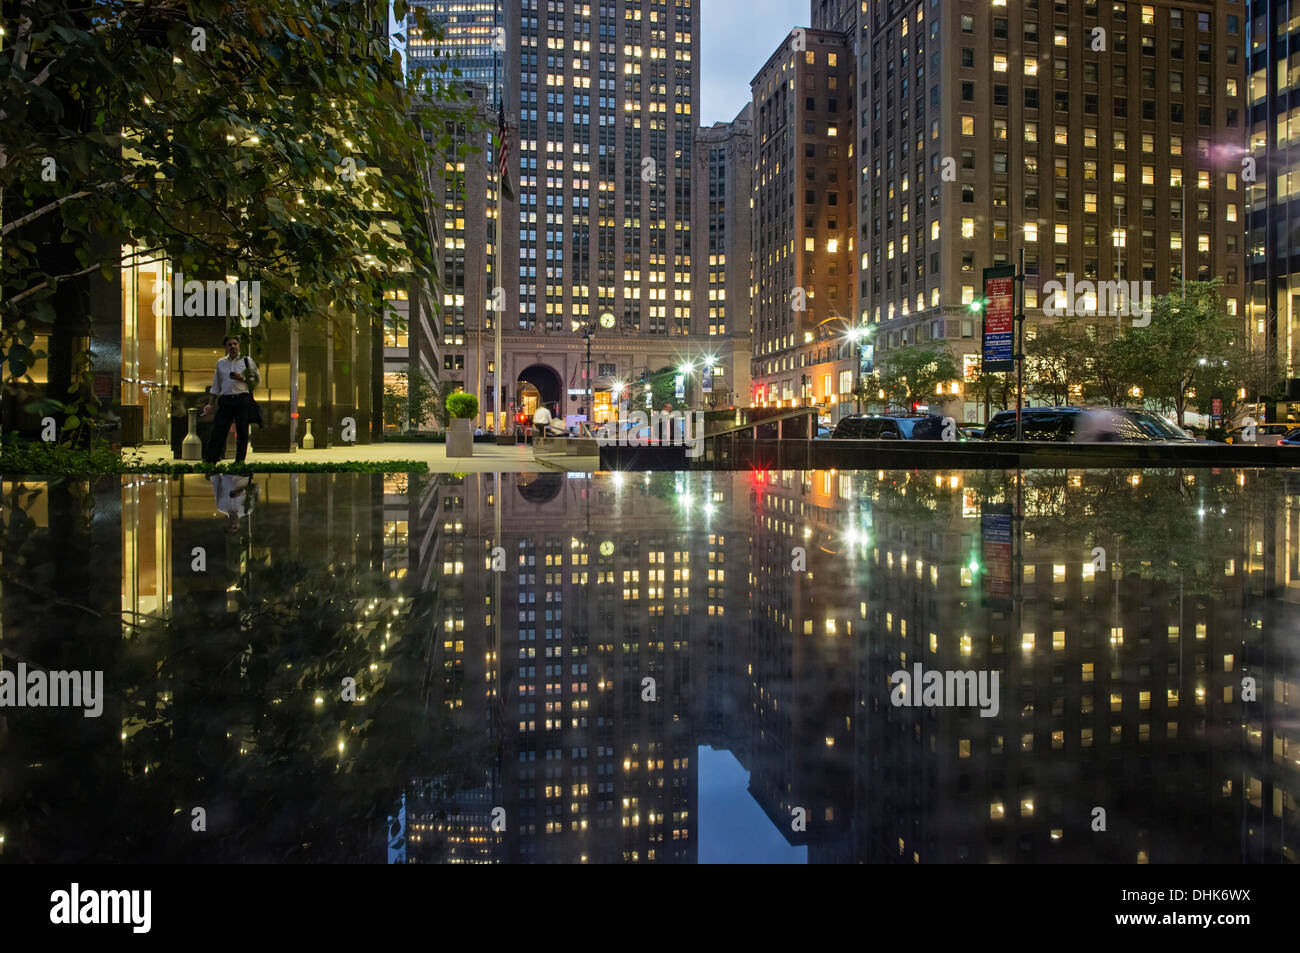 Reflet de la vie rencontré Building, Park Avenue, Manhattan, New York City Banque D'Images